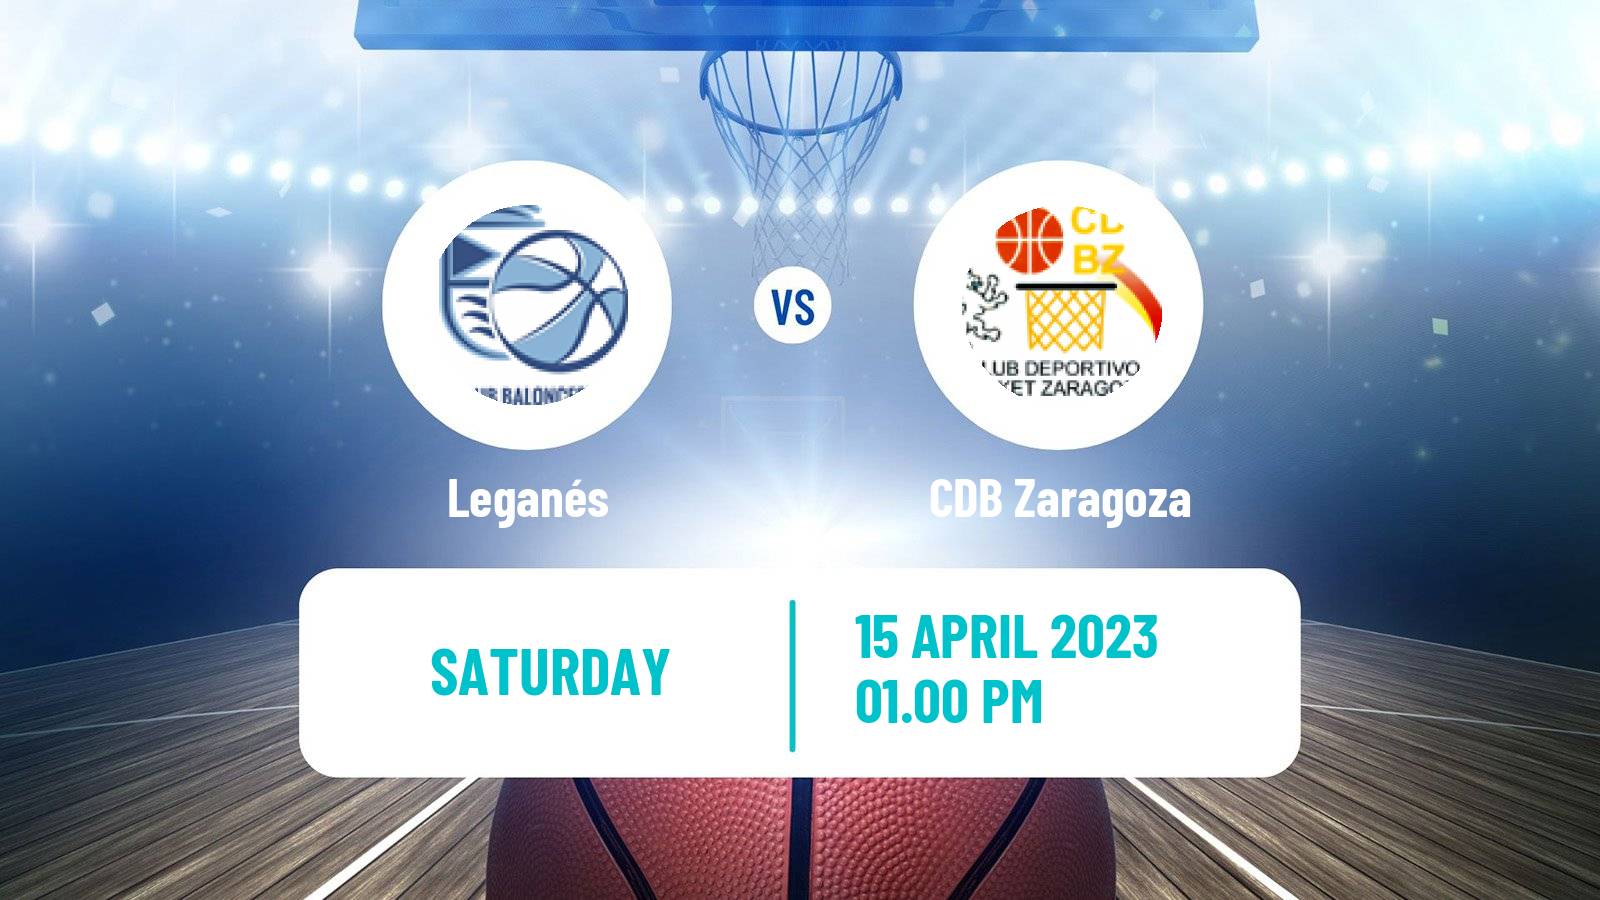 Basketball Spanish Liga Femenina Basketball Leganés - Zaragoza